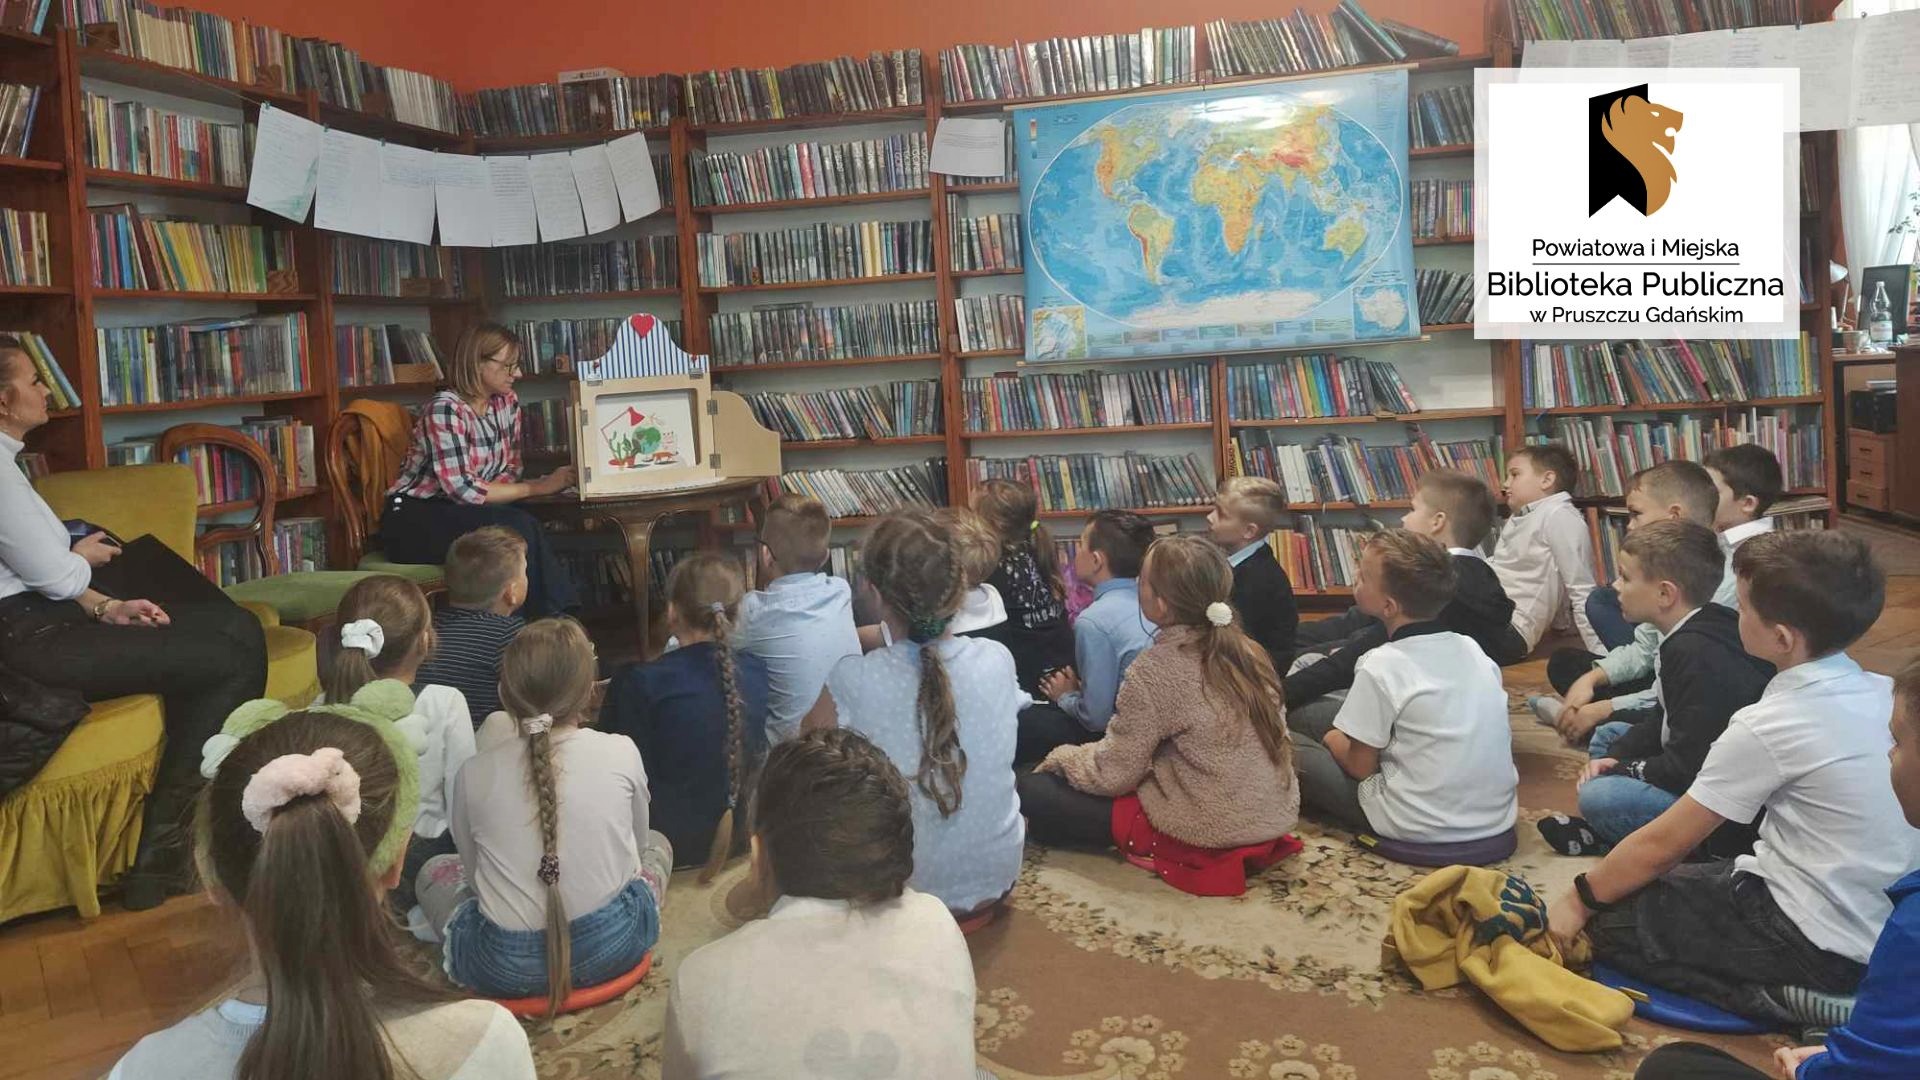 Dzieci siedzą na podłodze i patrzą w kierunku teatrzyku kamishibai, który stoi na stoliku. W teatrzyku znajduje się kolorowa ilustracja. Po lewej siedzi bibliotekarka, a obok niej nauczycielka. Po prawej wisi mapa świata. W tle regały z książkami.